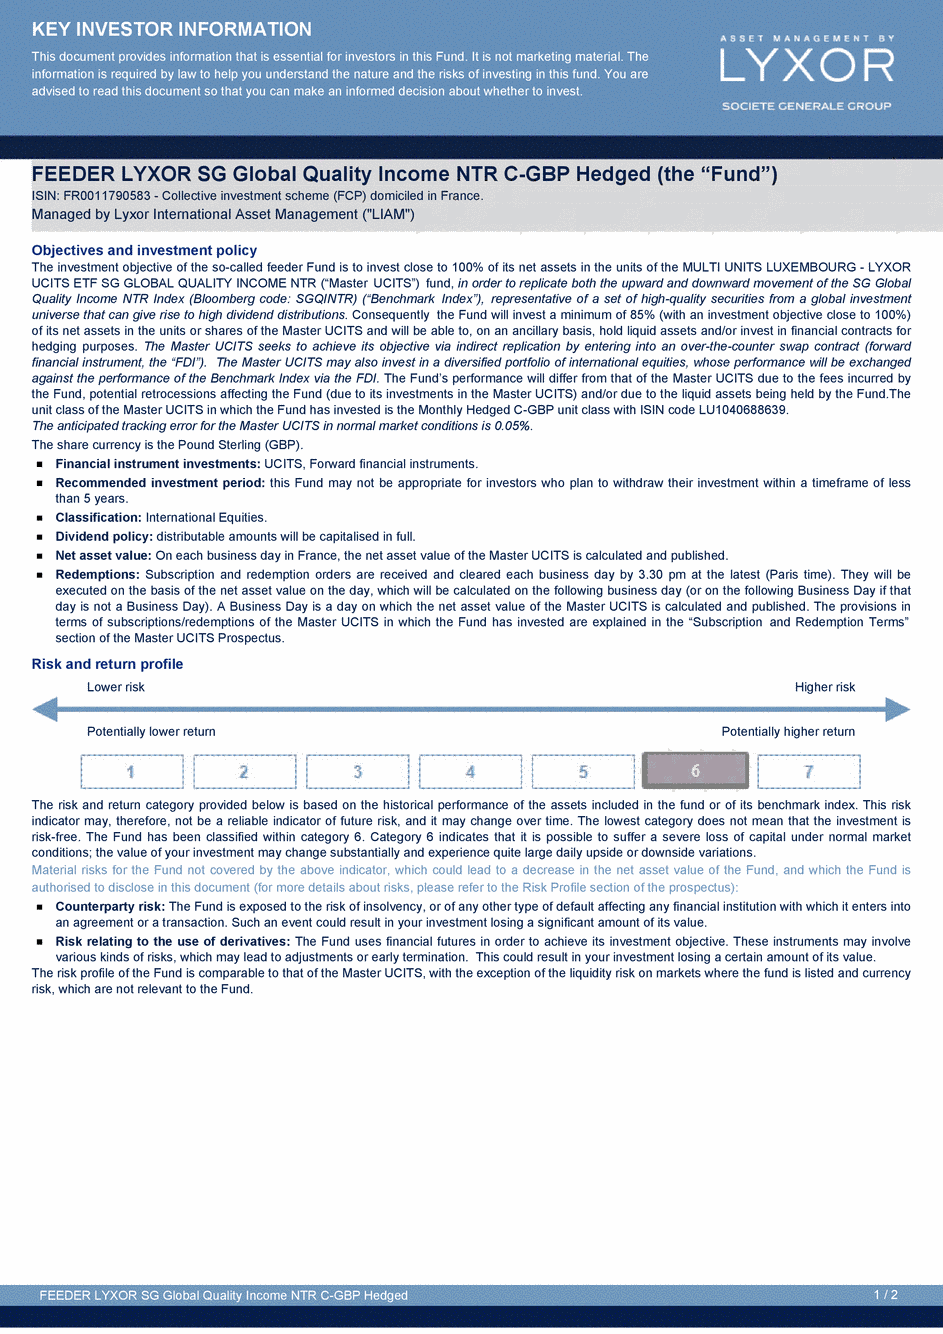 DICI FEEDER LYXOR SG GLOBAL QUALITY INCOME NTR C-GBP-Hedged - 21/04/2015 - Anglais